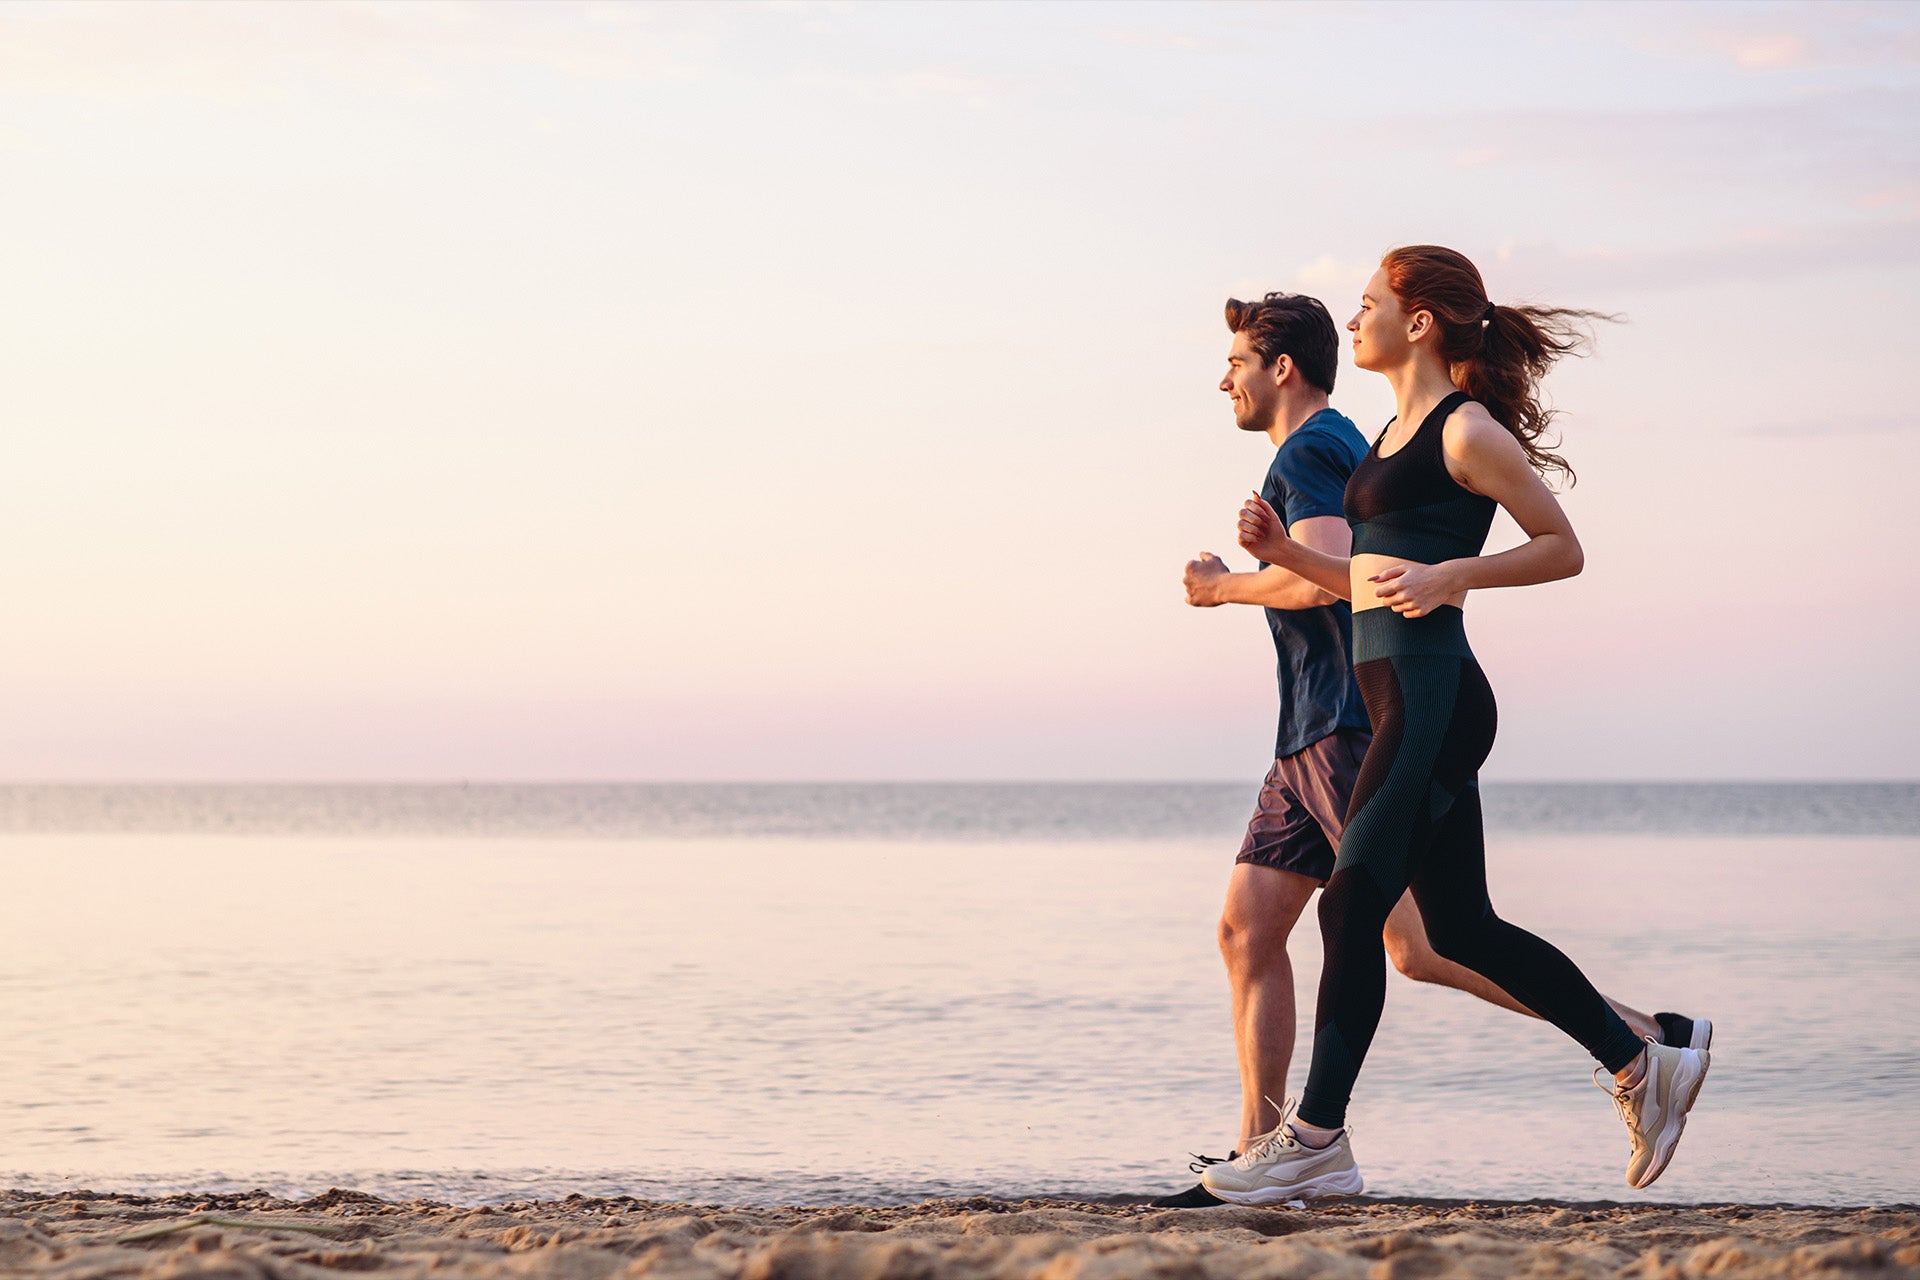 How to Make Running Feel Easier